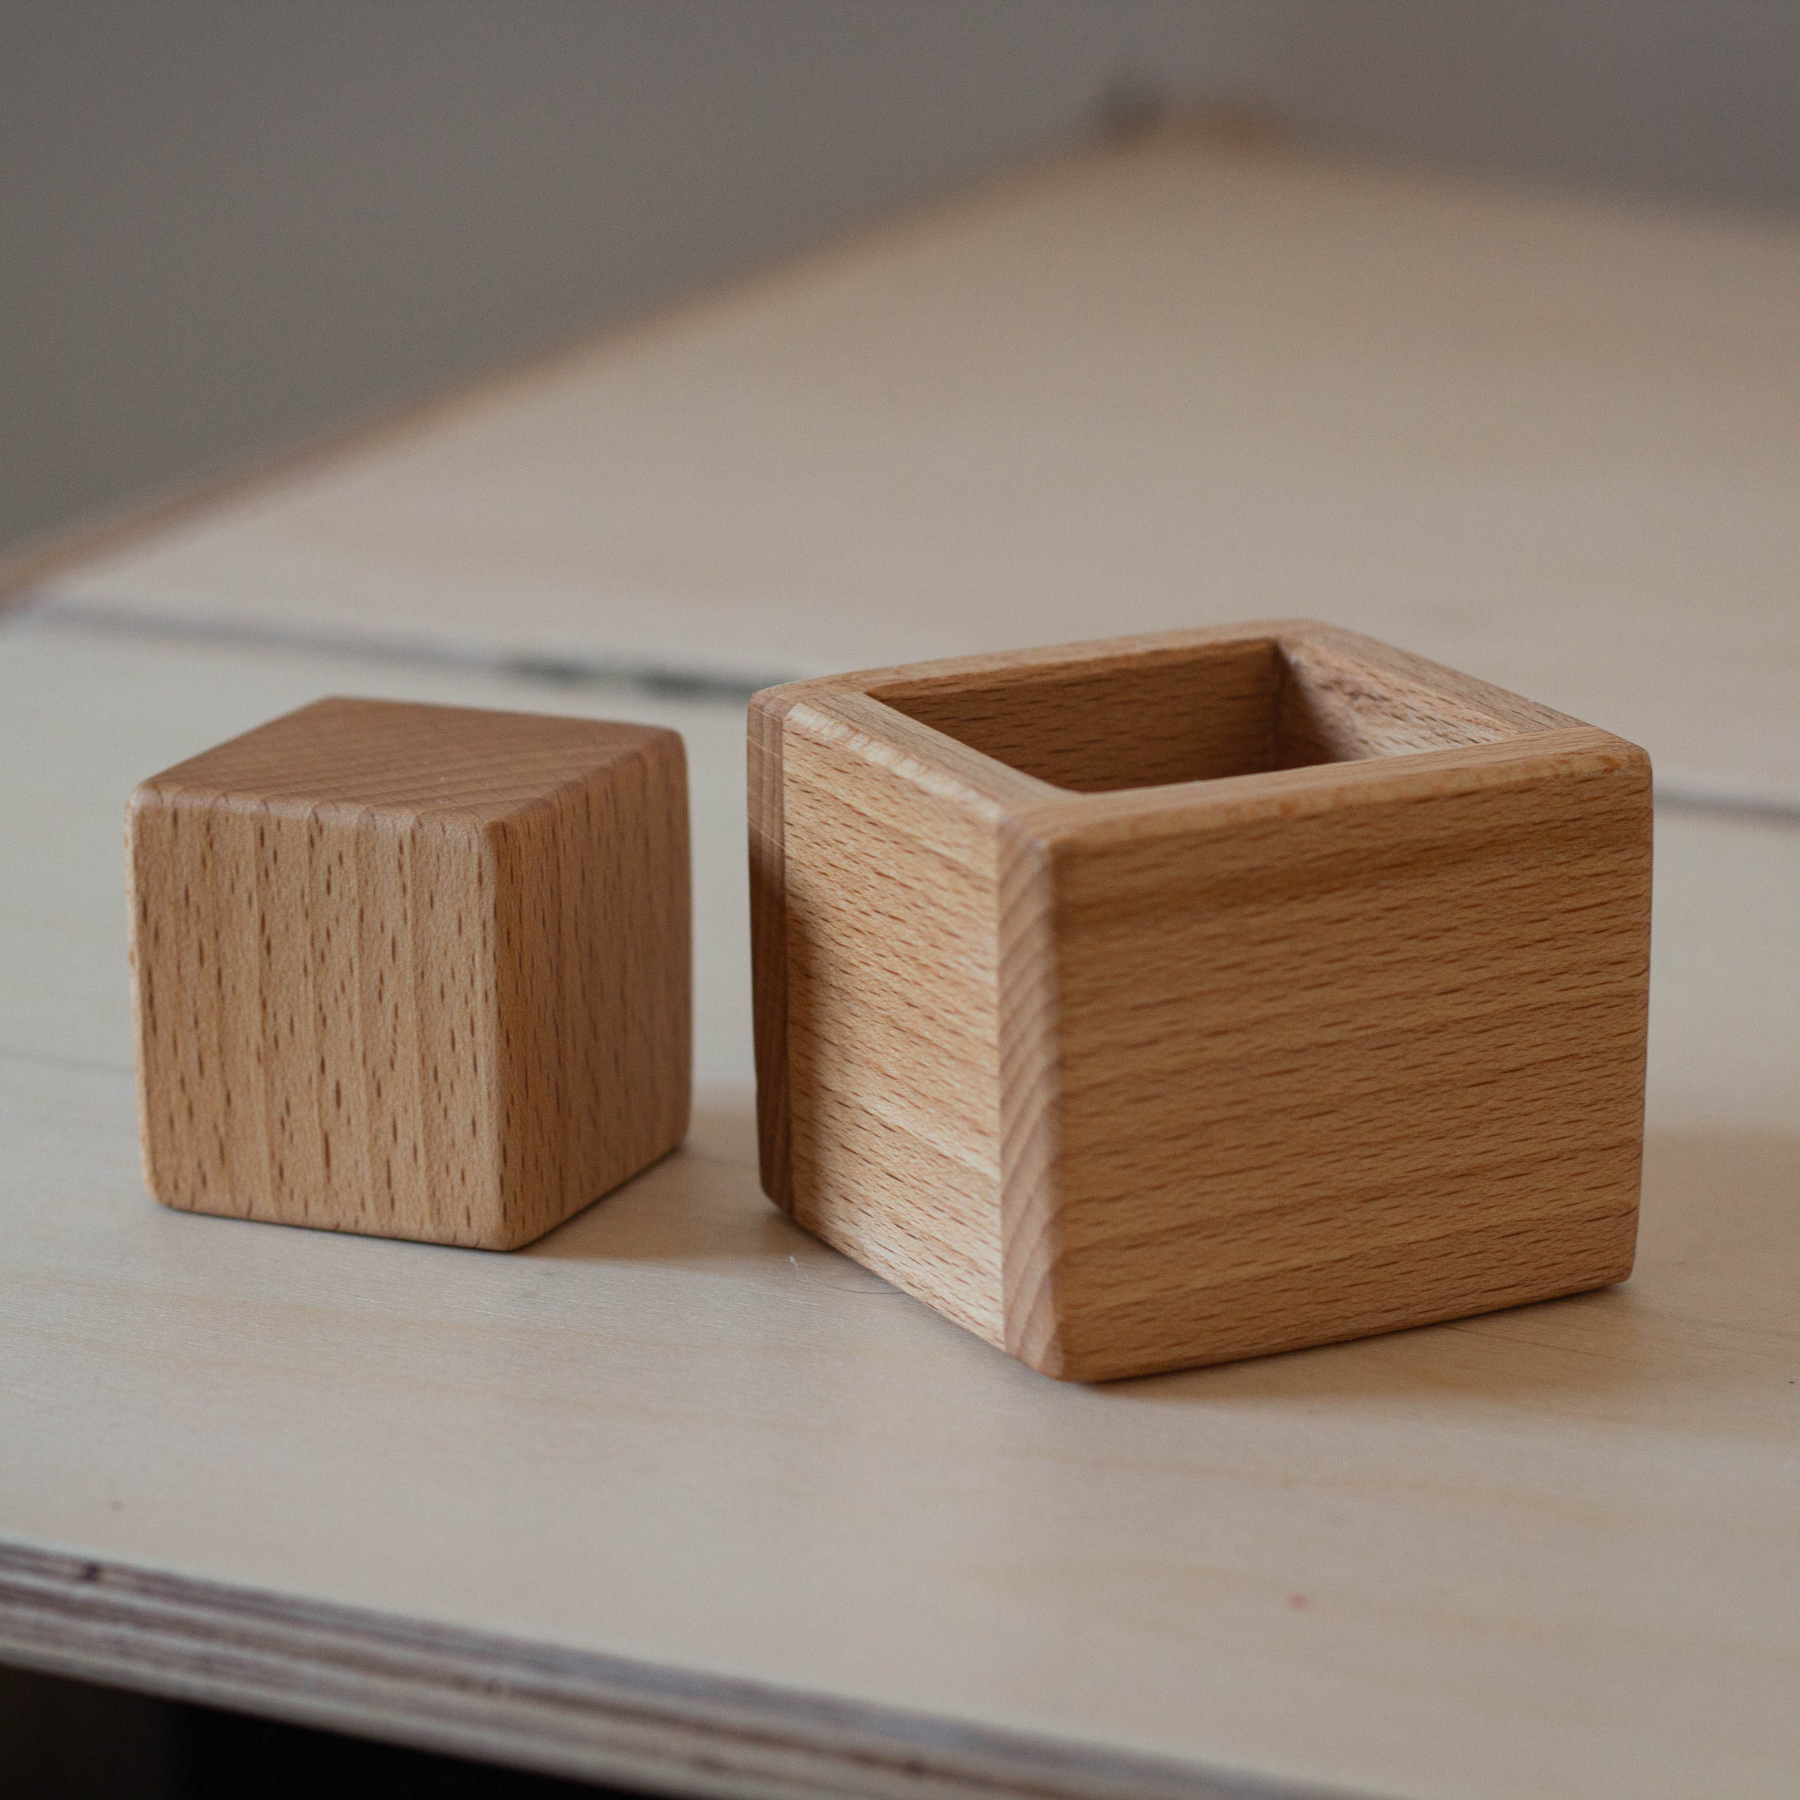 Montessori box and cube